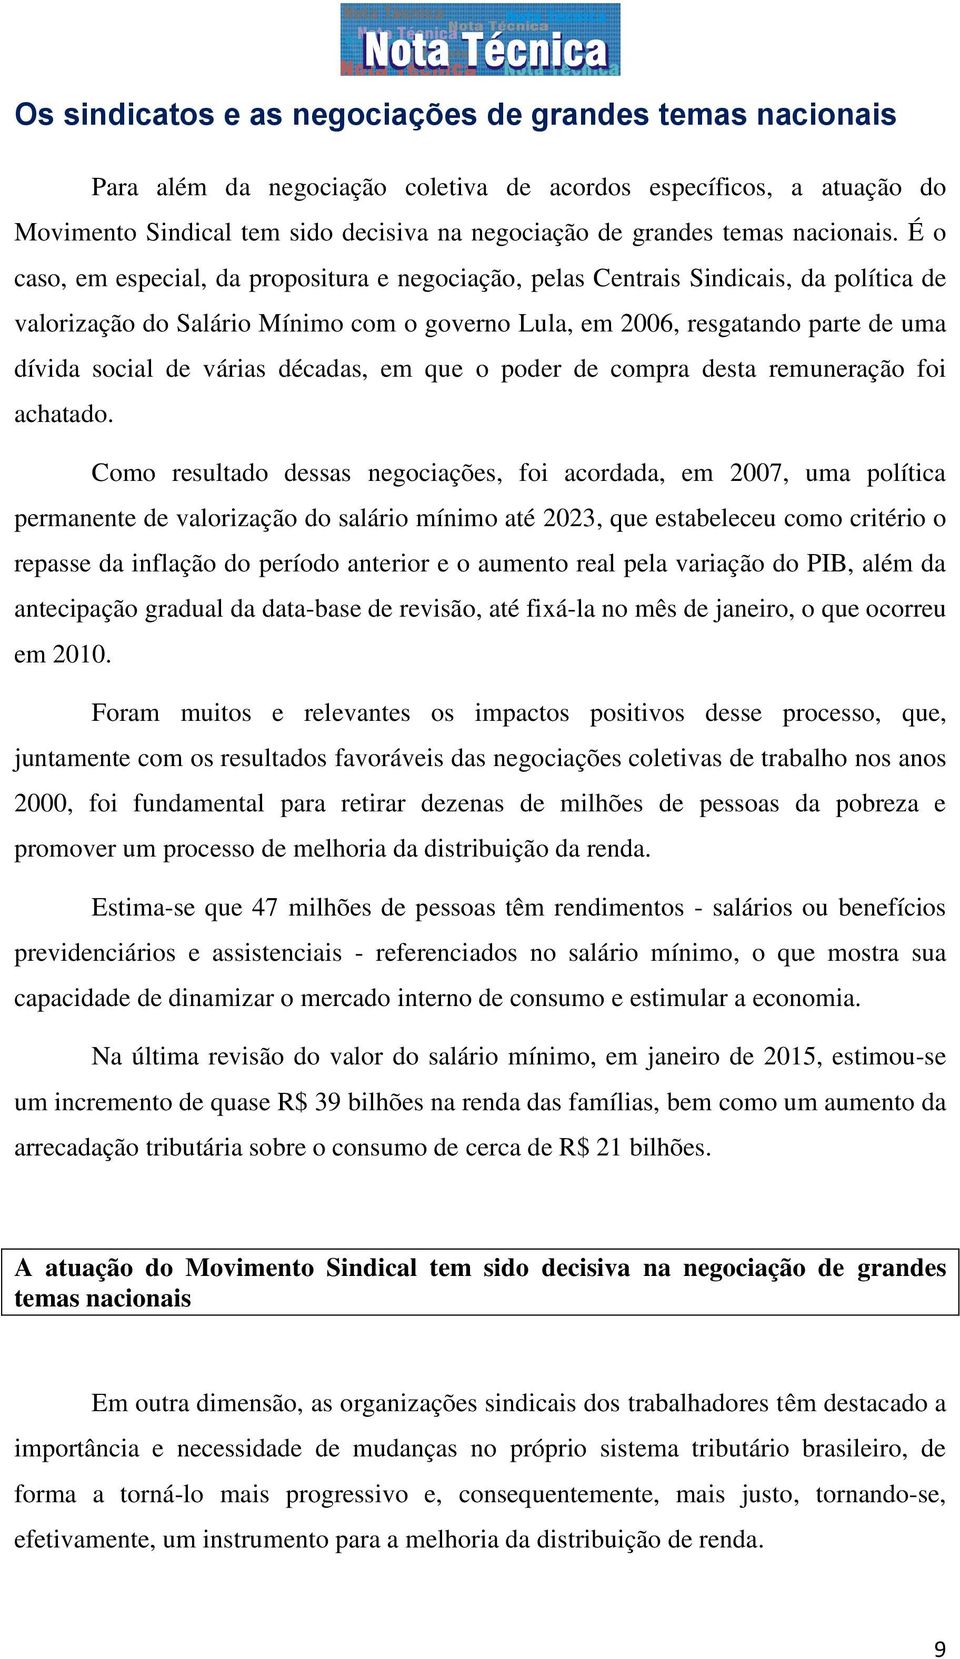 É o caso, em especial, da propositura e negociação, pelas Centrais Sindicais, da política de valorização do Salário Mínimo com o governo Lula, em 2006, resgatando parte de uma dívida social de várias